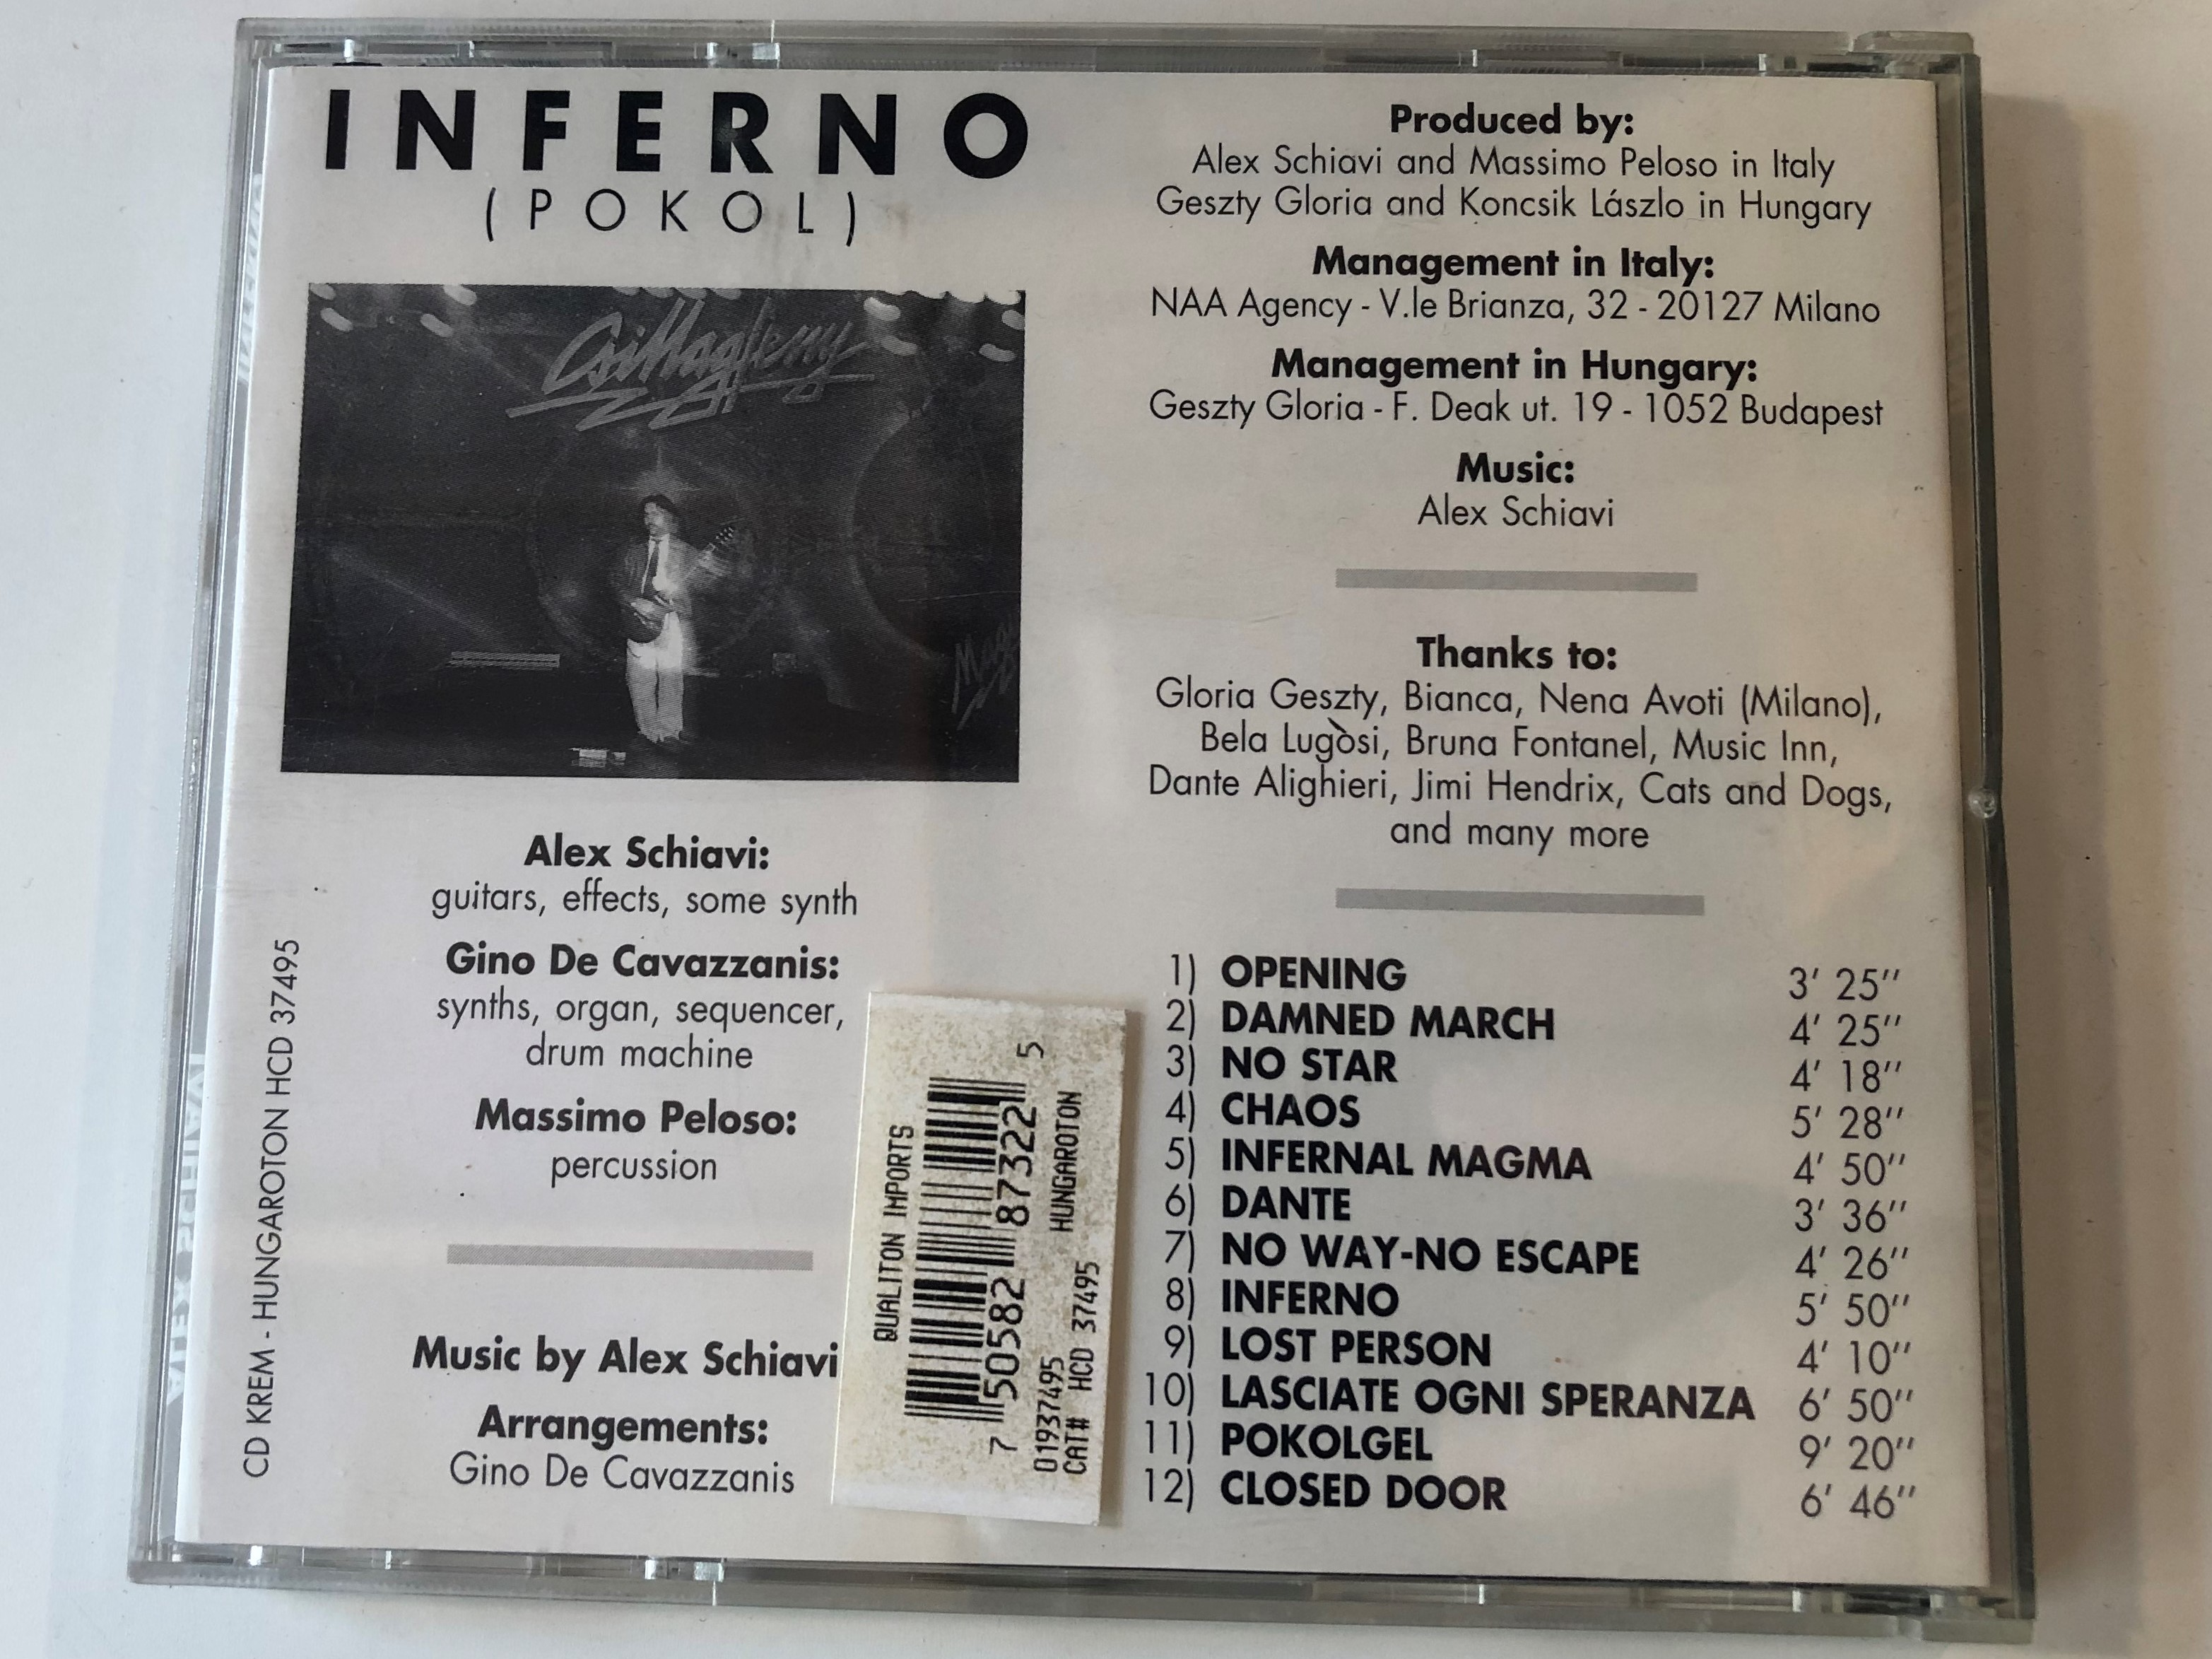 inferno-alex-schiavi-kr-m-audio-cd-1991-stereo-hcd-37495-4-.jpg